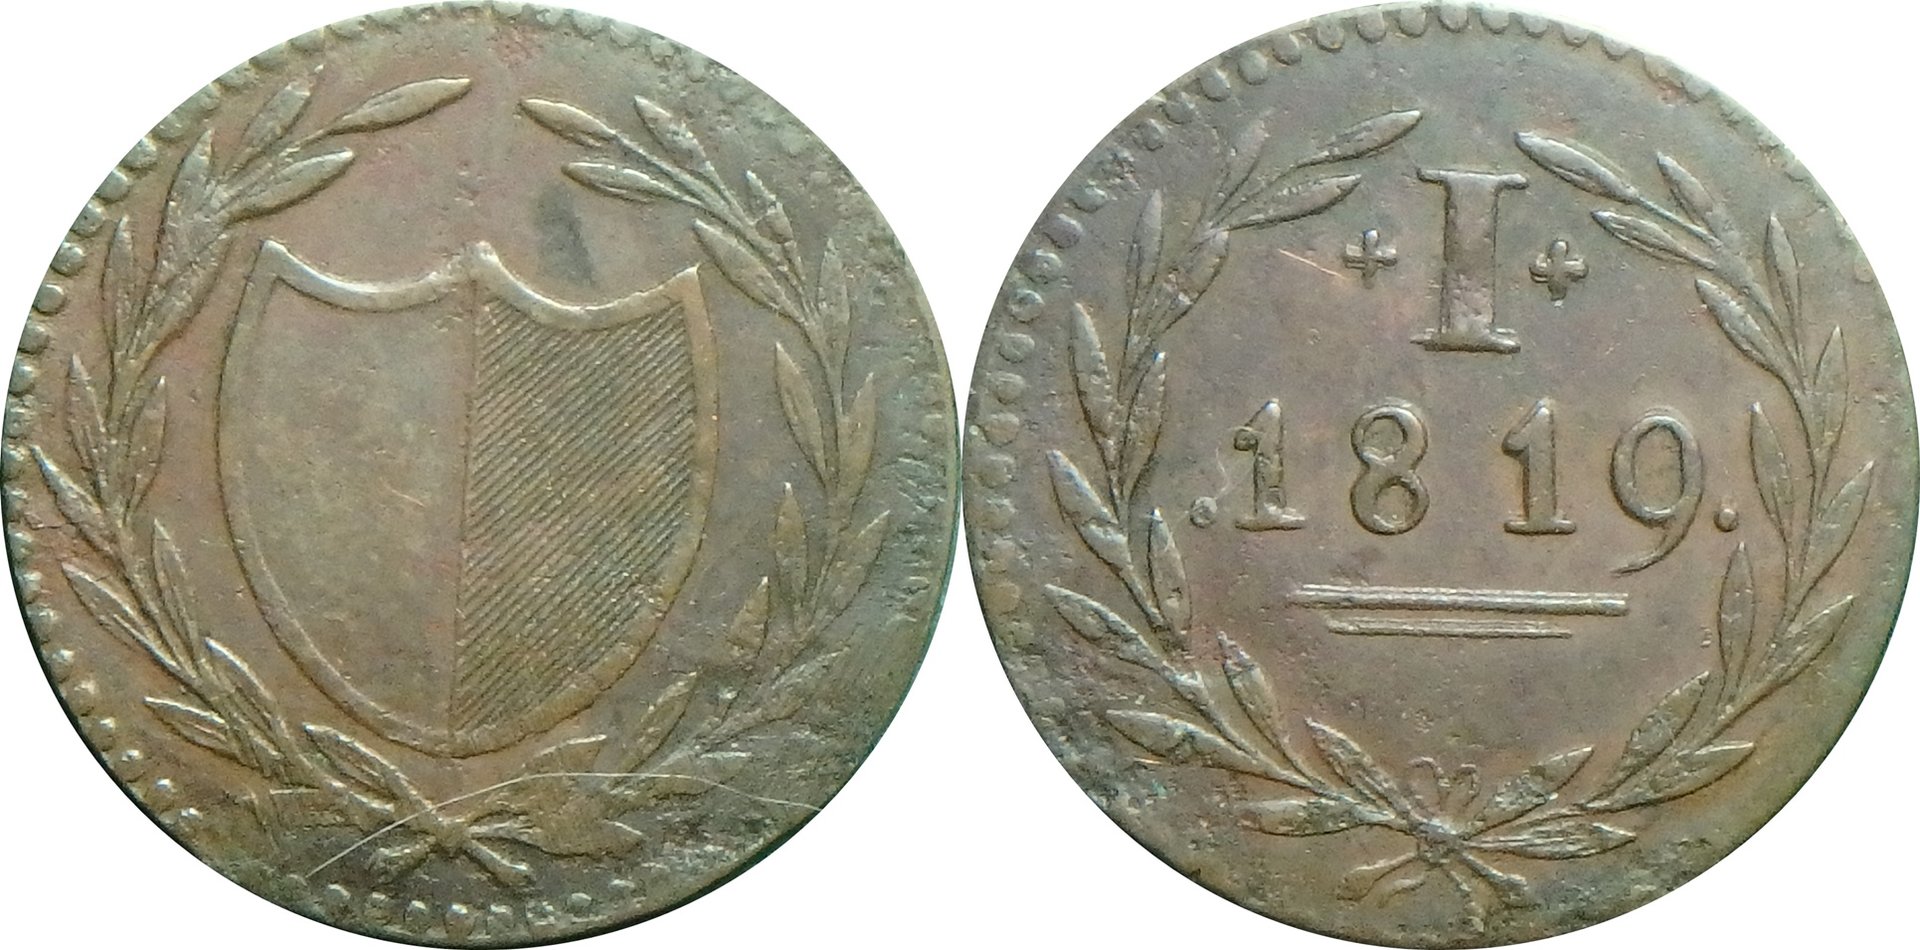 1819 B 1 d.jpg